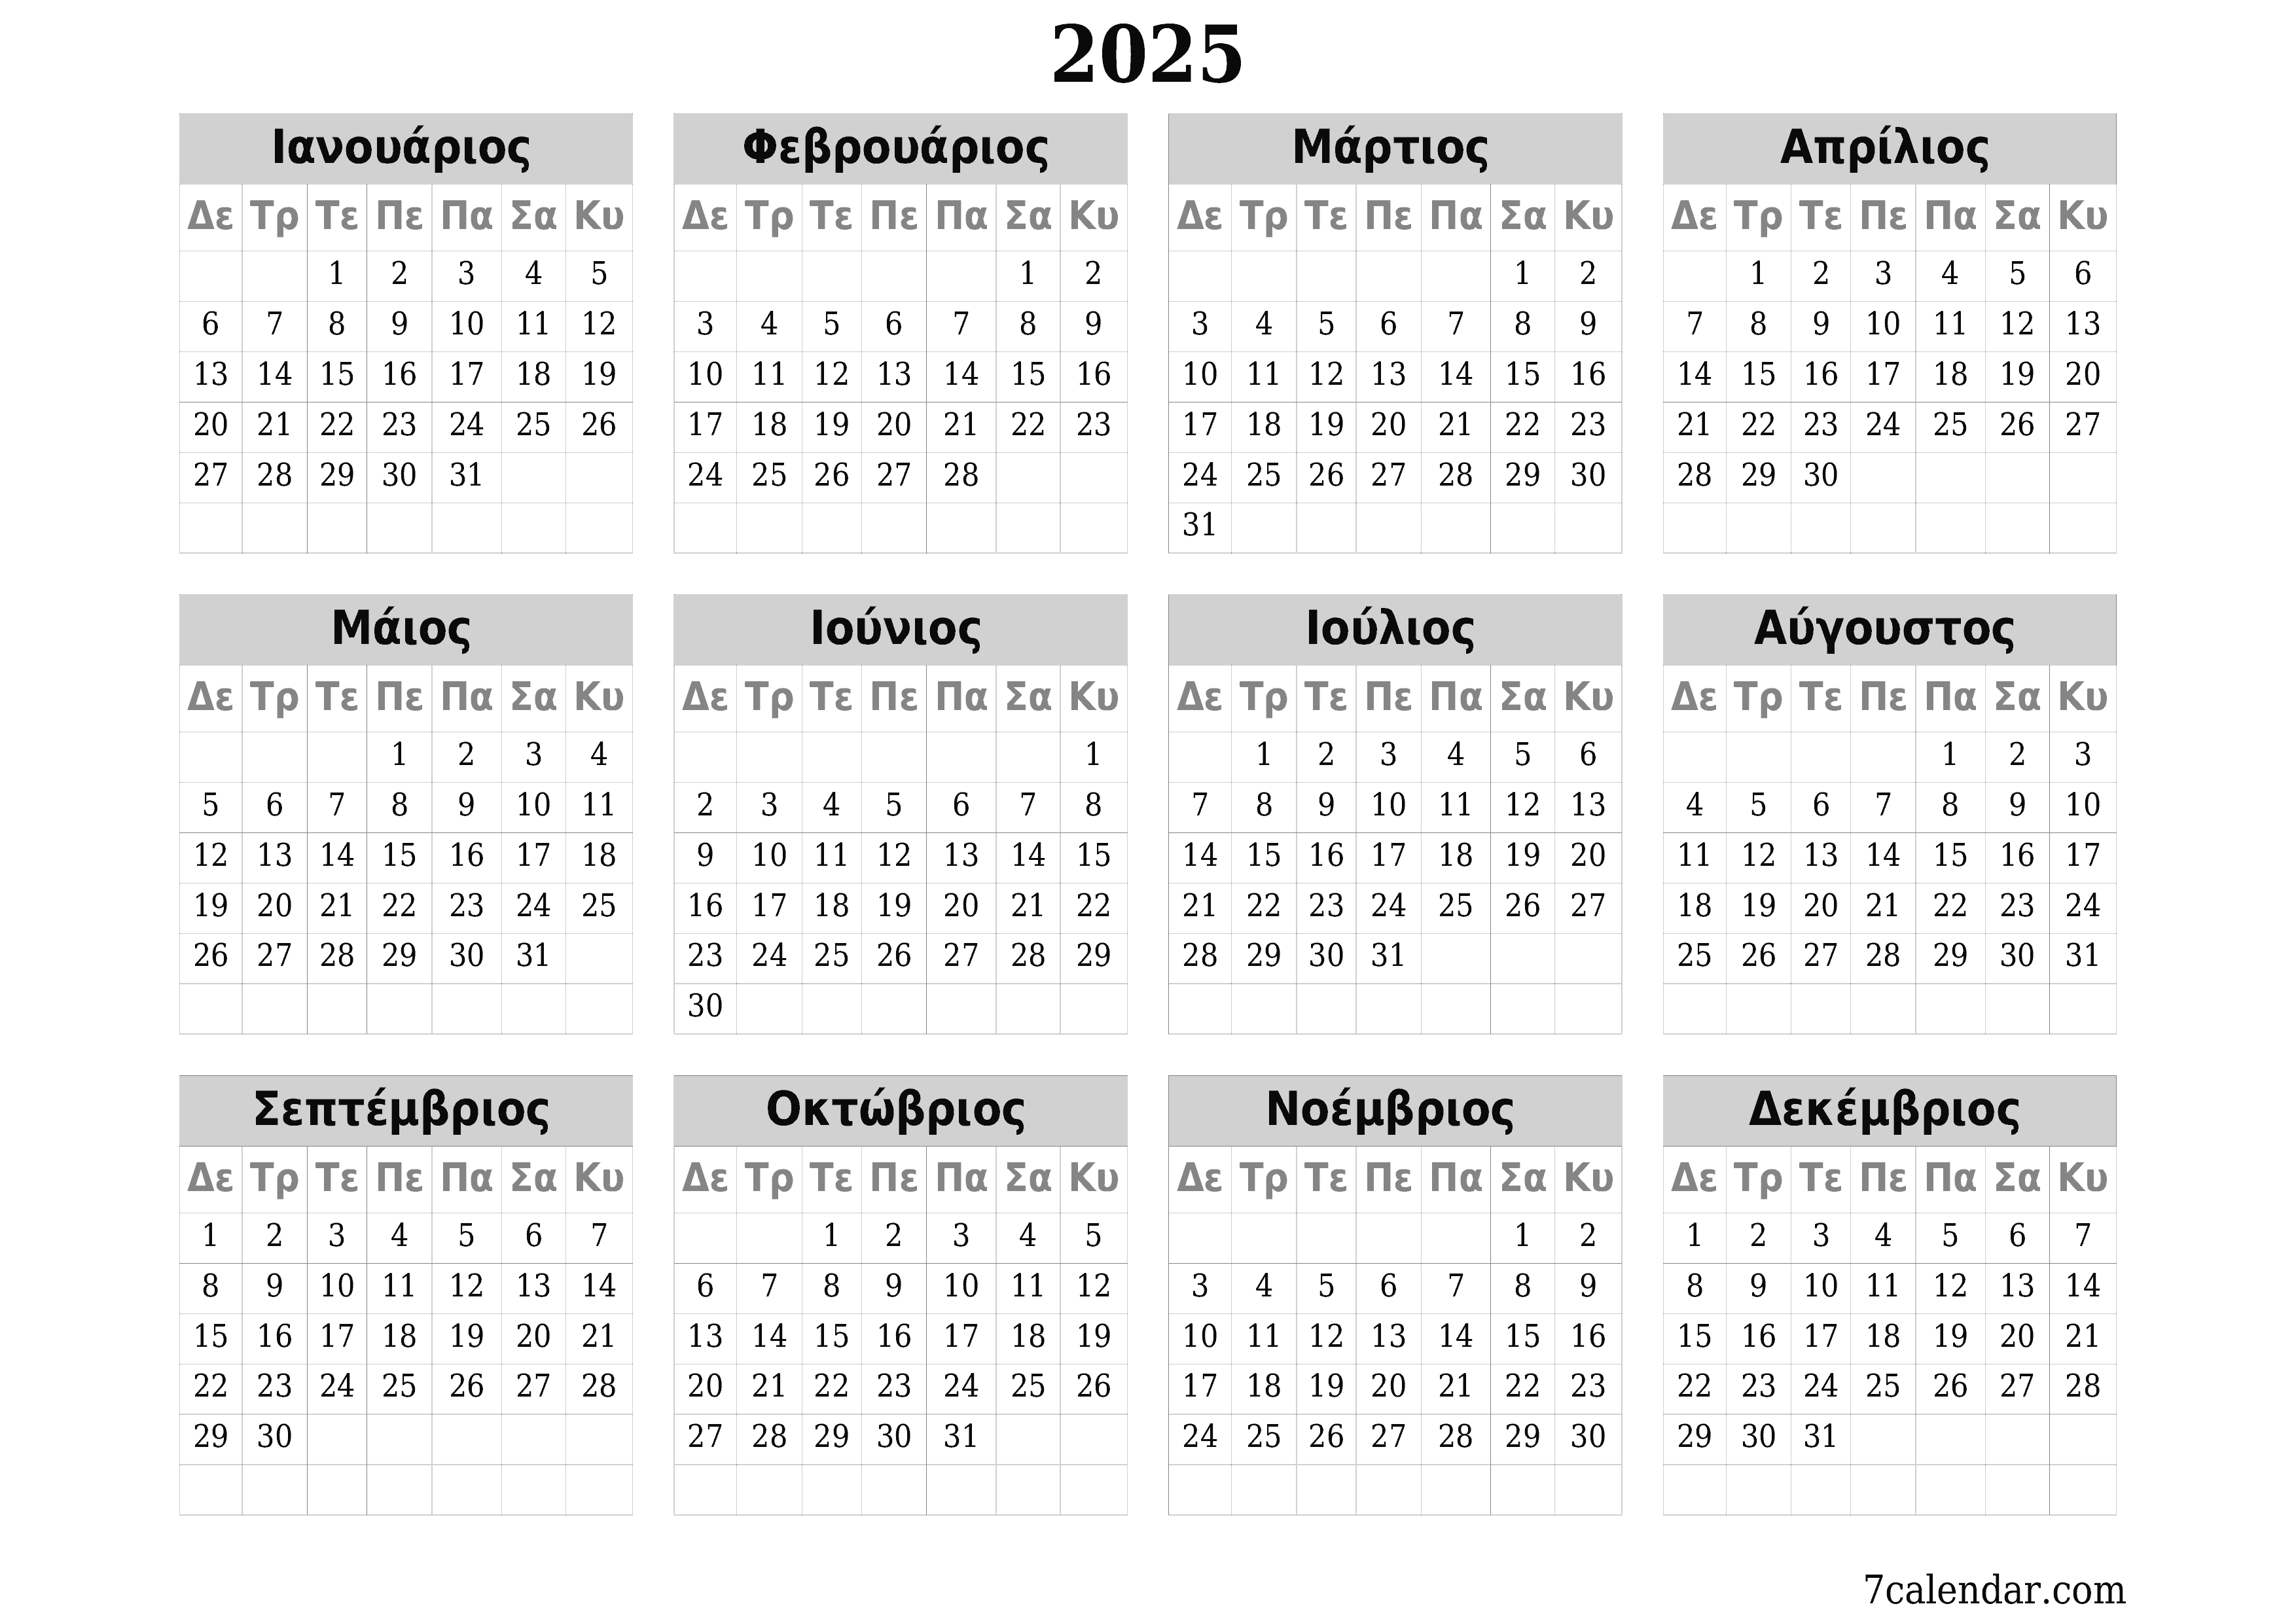 εκτυπώσιμο ημερολόγιο ημερολόγιο τοίχου πρότυπο ημερολογίου δωρεάν ημερολόγιοοριζόντιος Ετήσιο Ημερολόγιο Νοέμβριος (Νοε) 2025